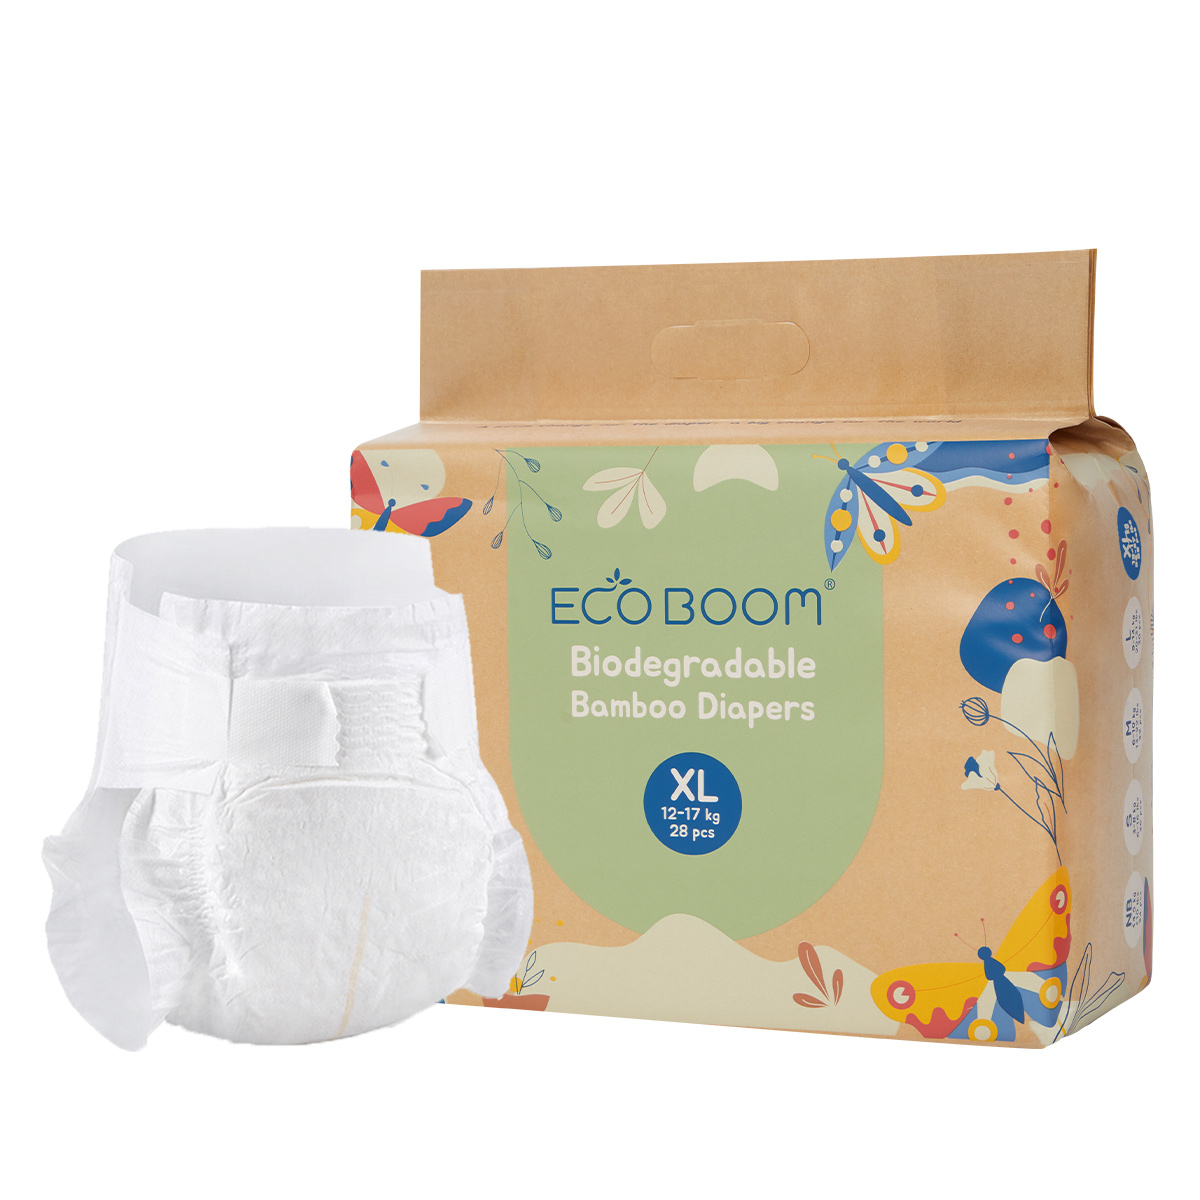 ECO BOOM bamboo diaper company-2